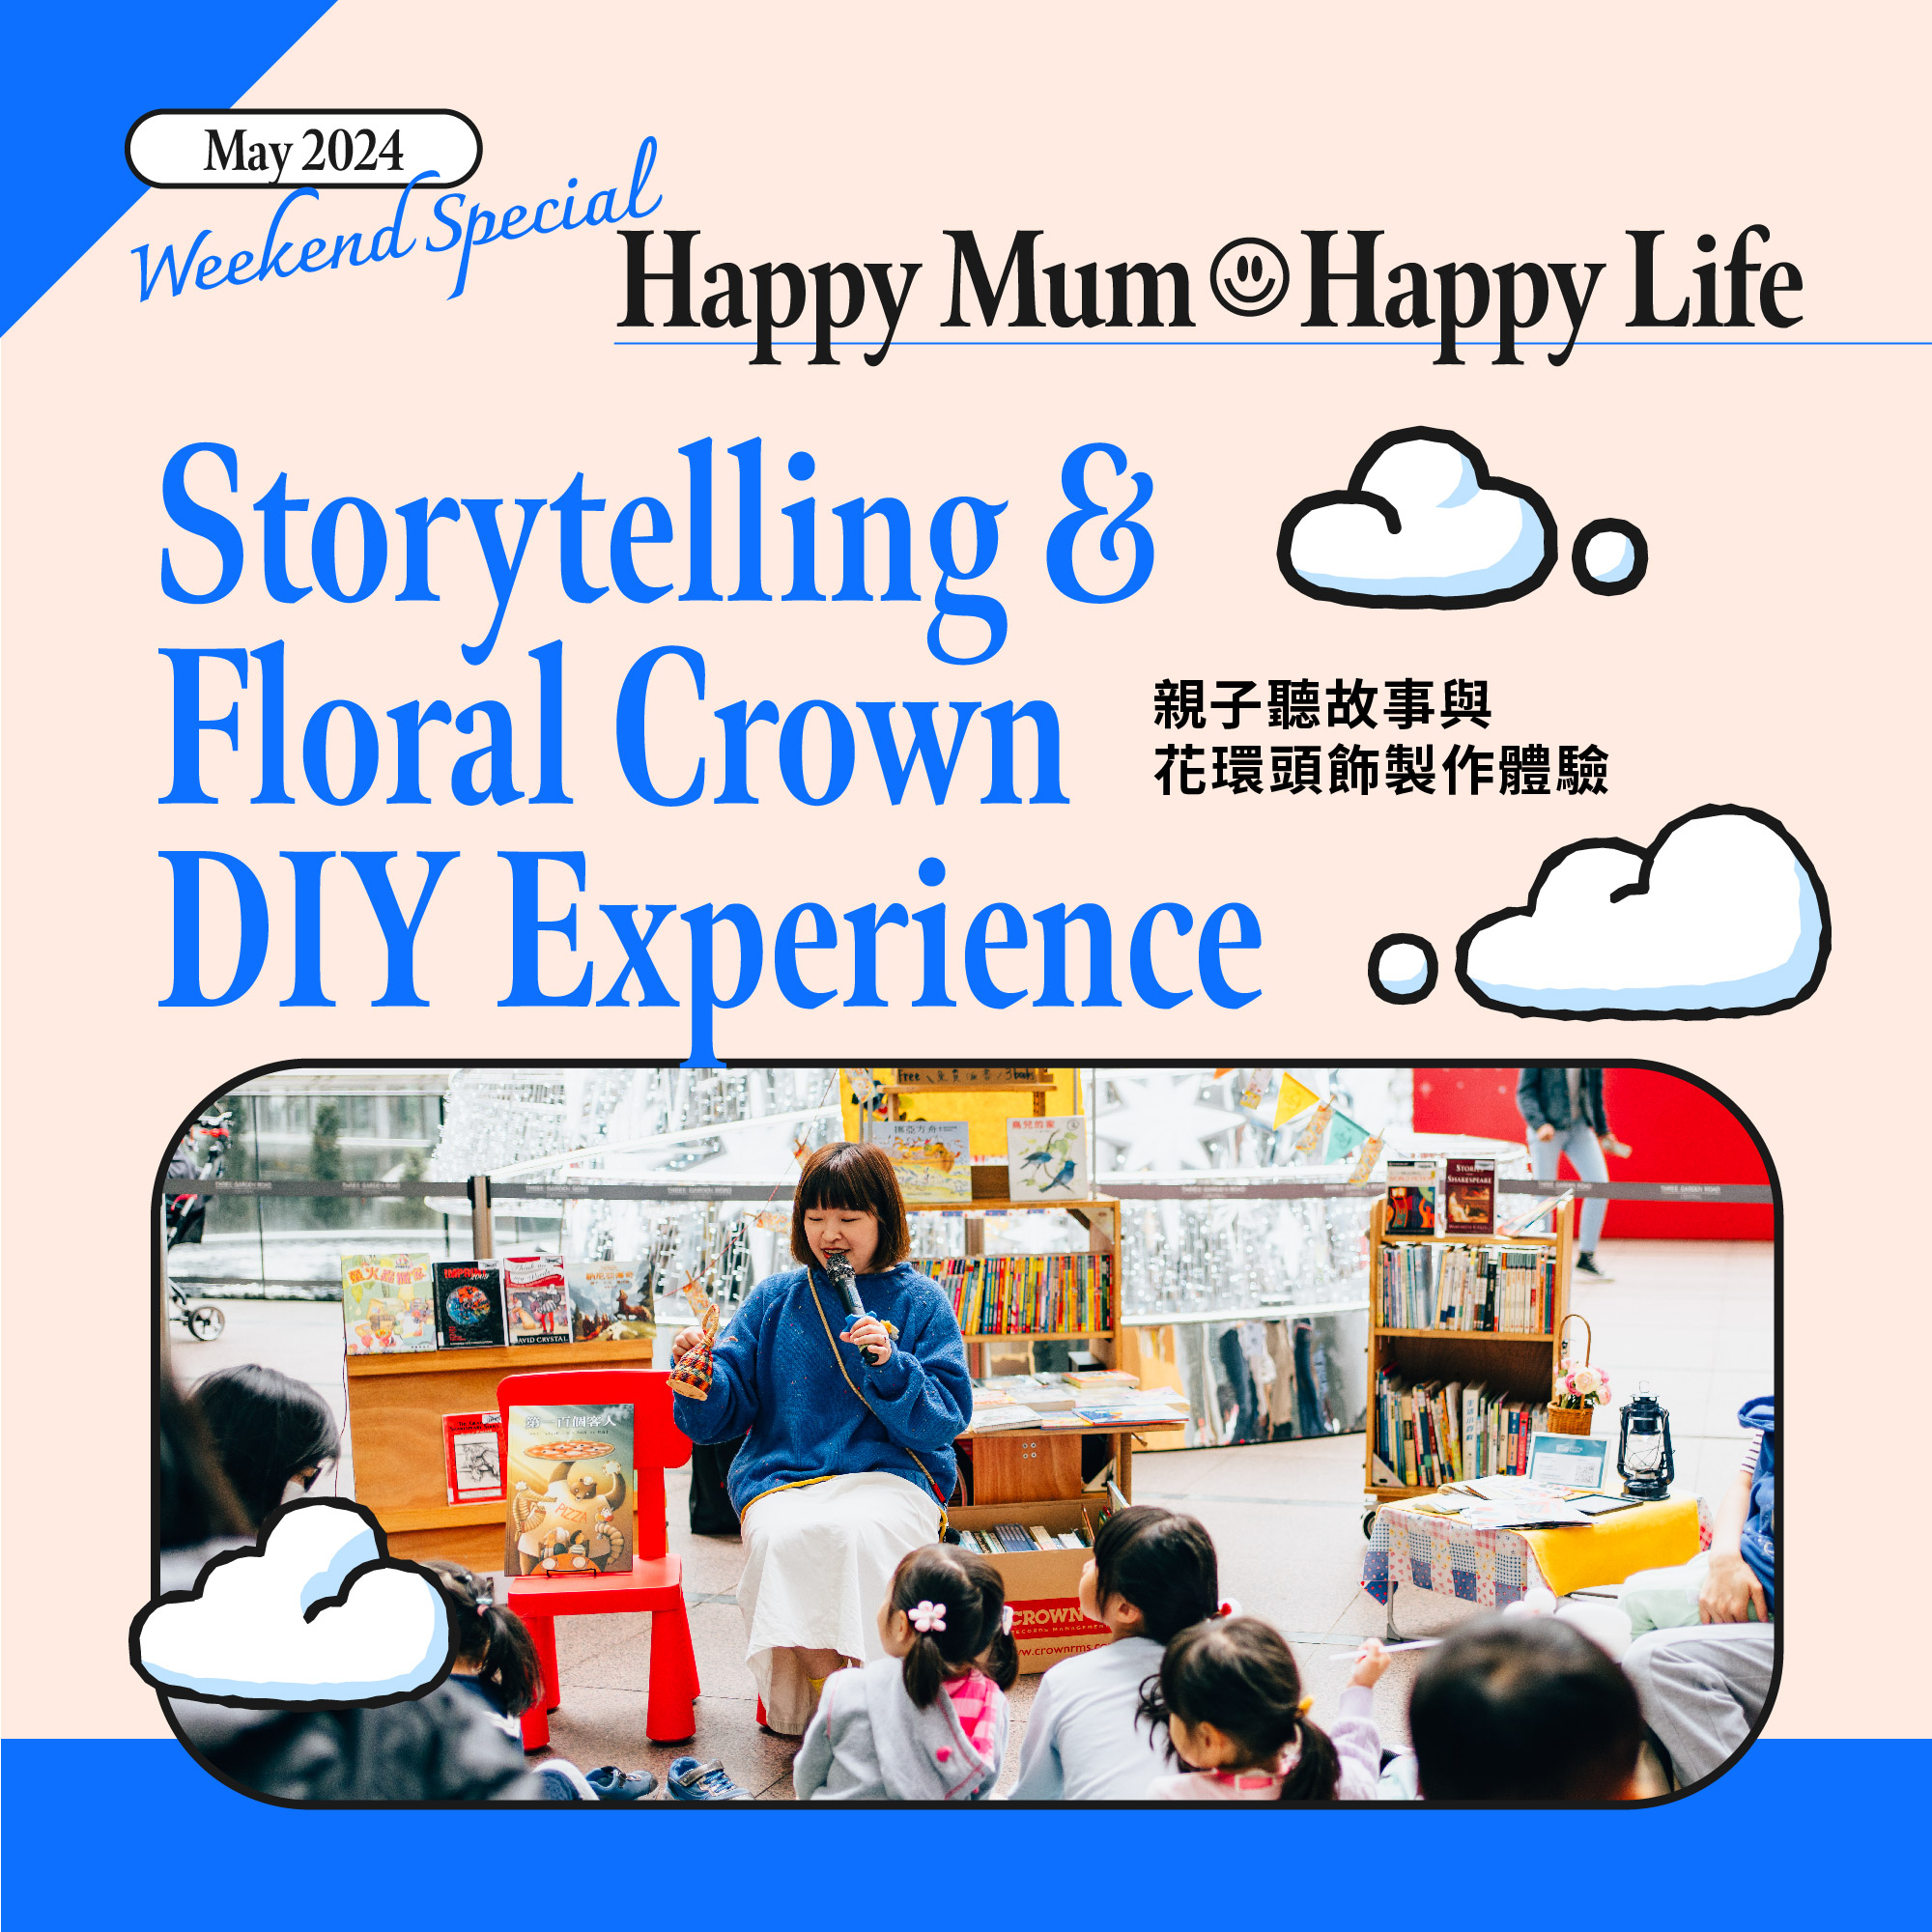 Storytelling & Floral Crown DIY Experience